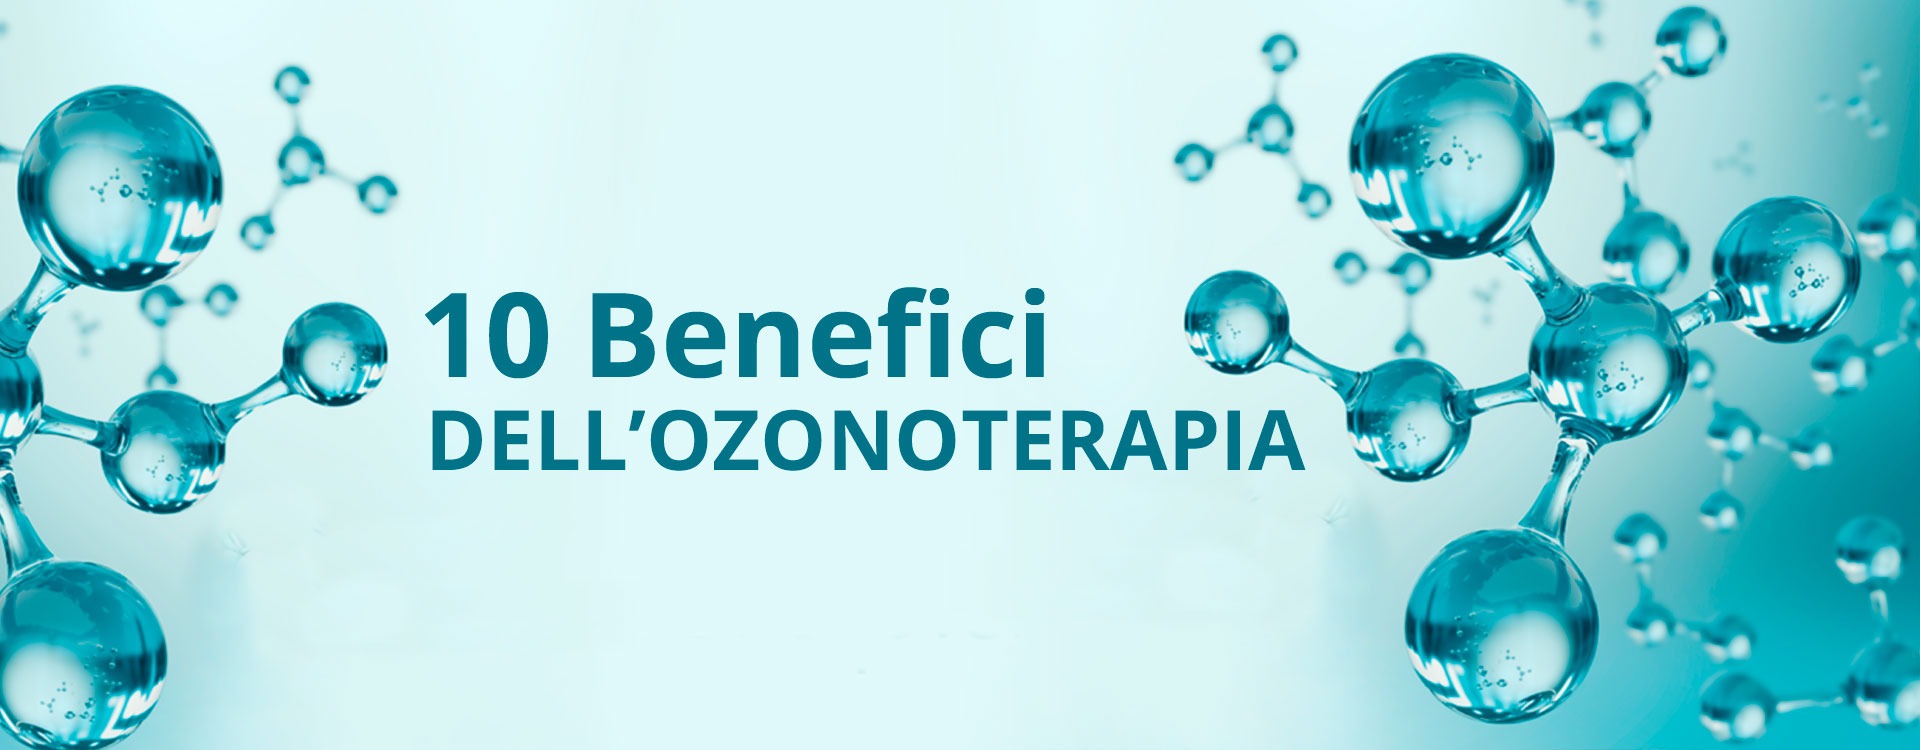 Ozonoterapia: 10 Benefici che Forse non Conosci